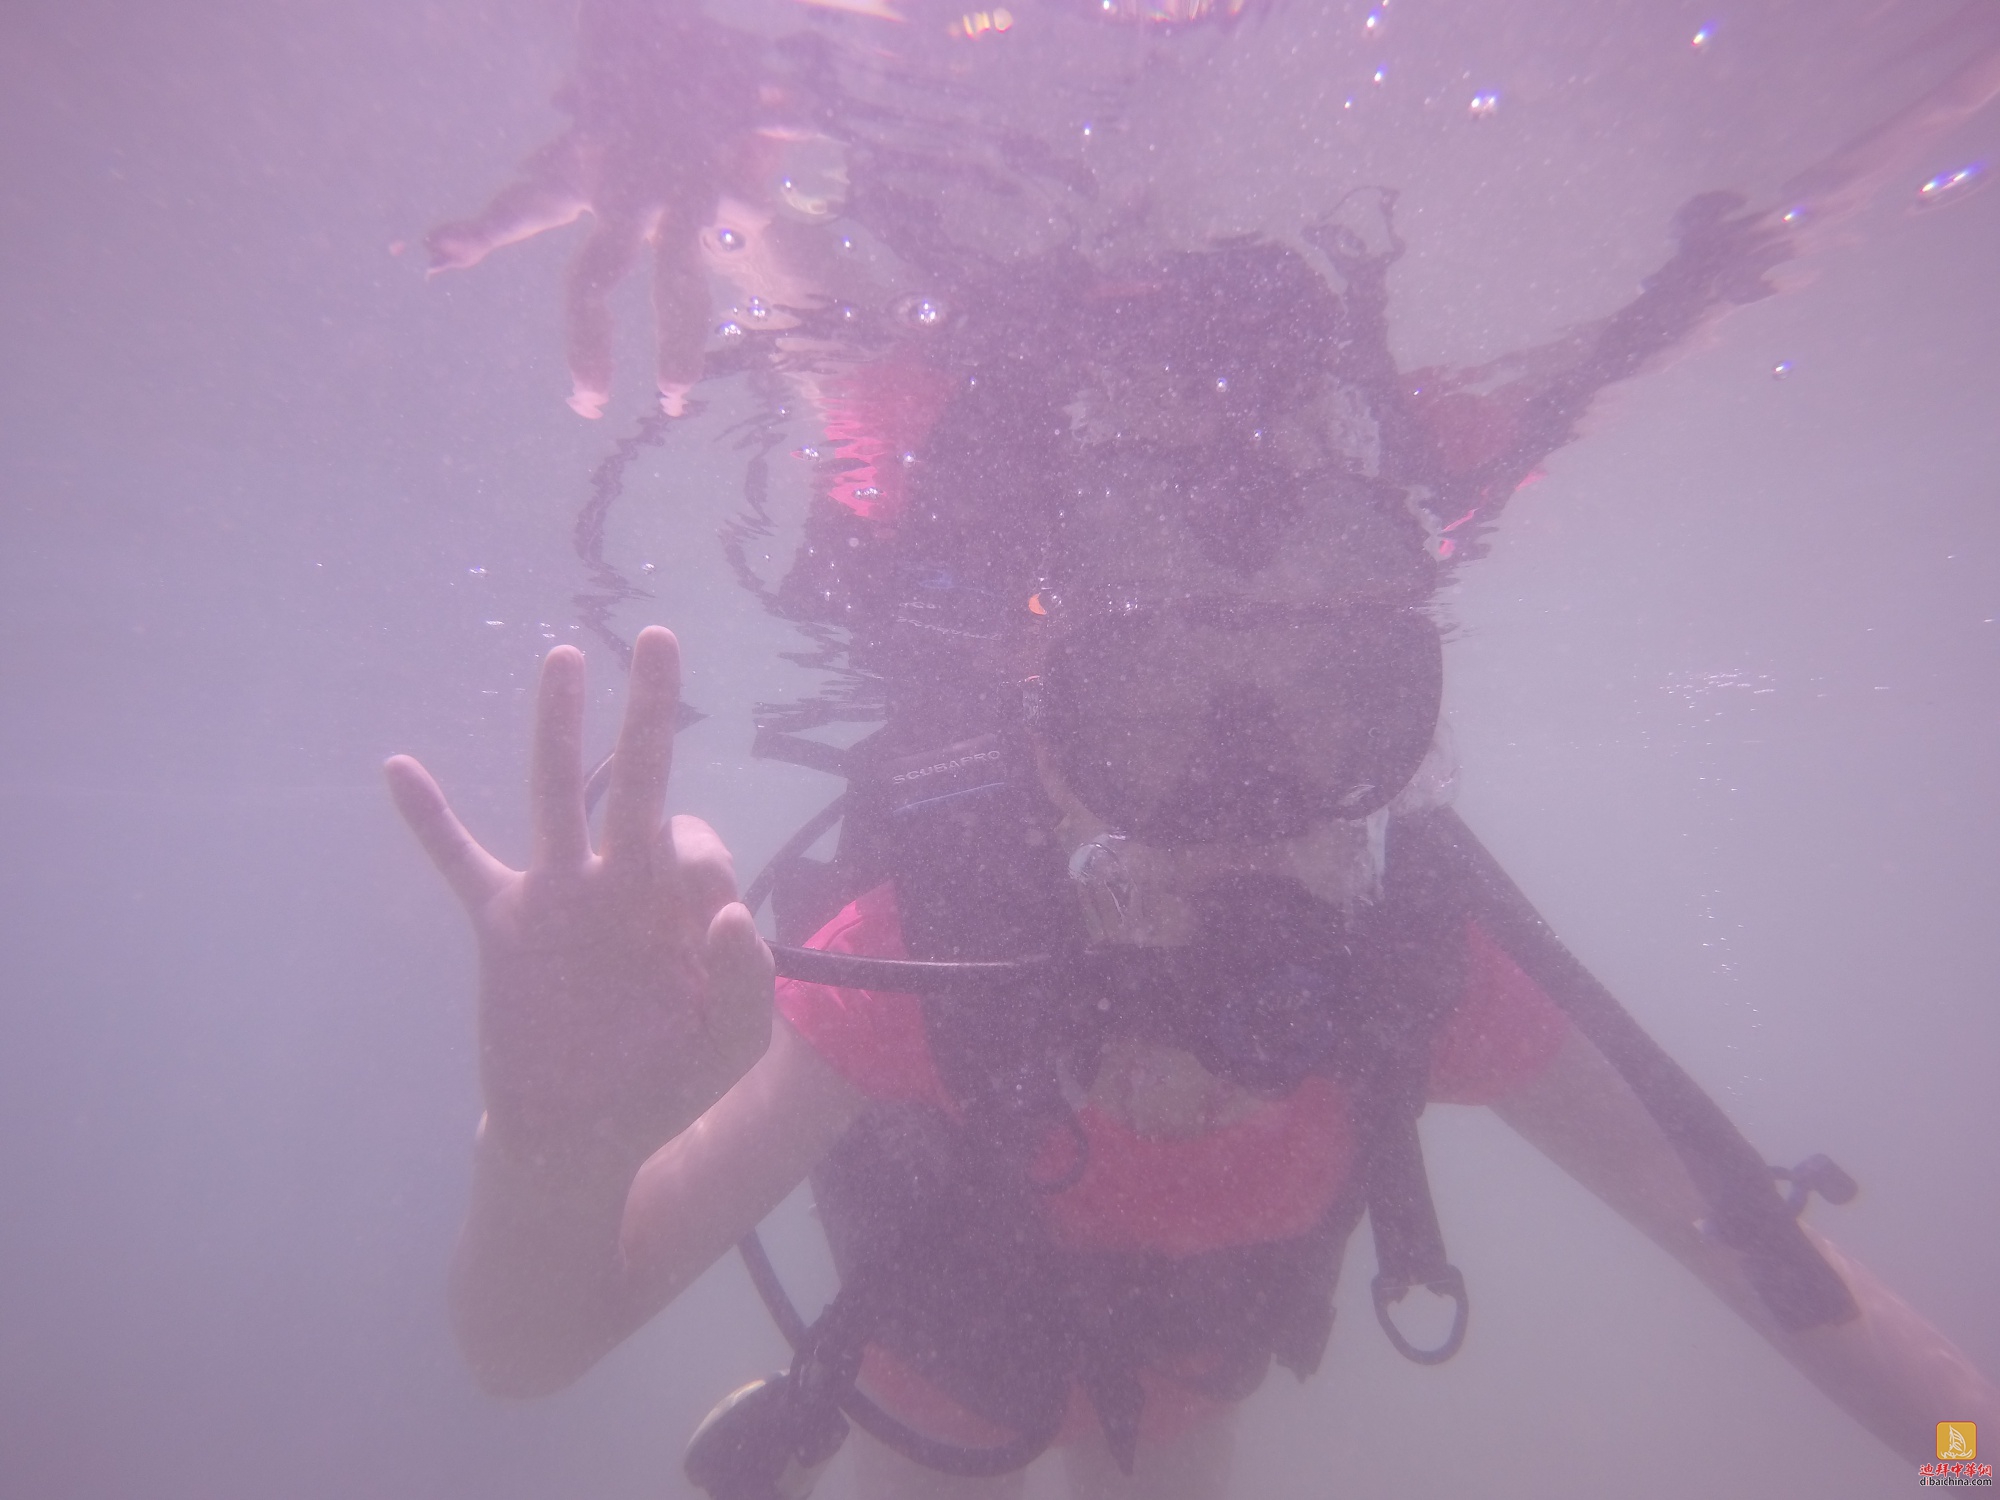 #探海底啦#2016年5月20日Jumeirah体验潜水活动花絮帖